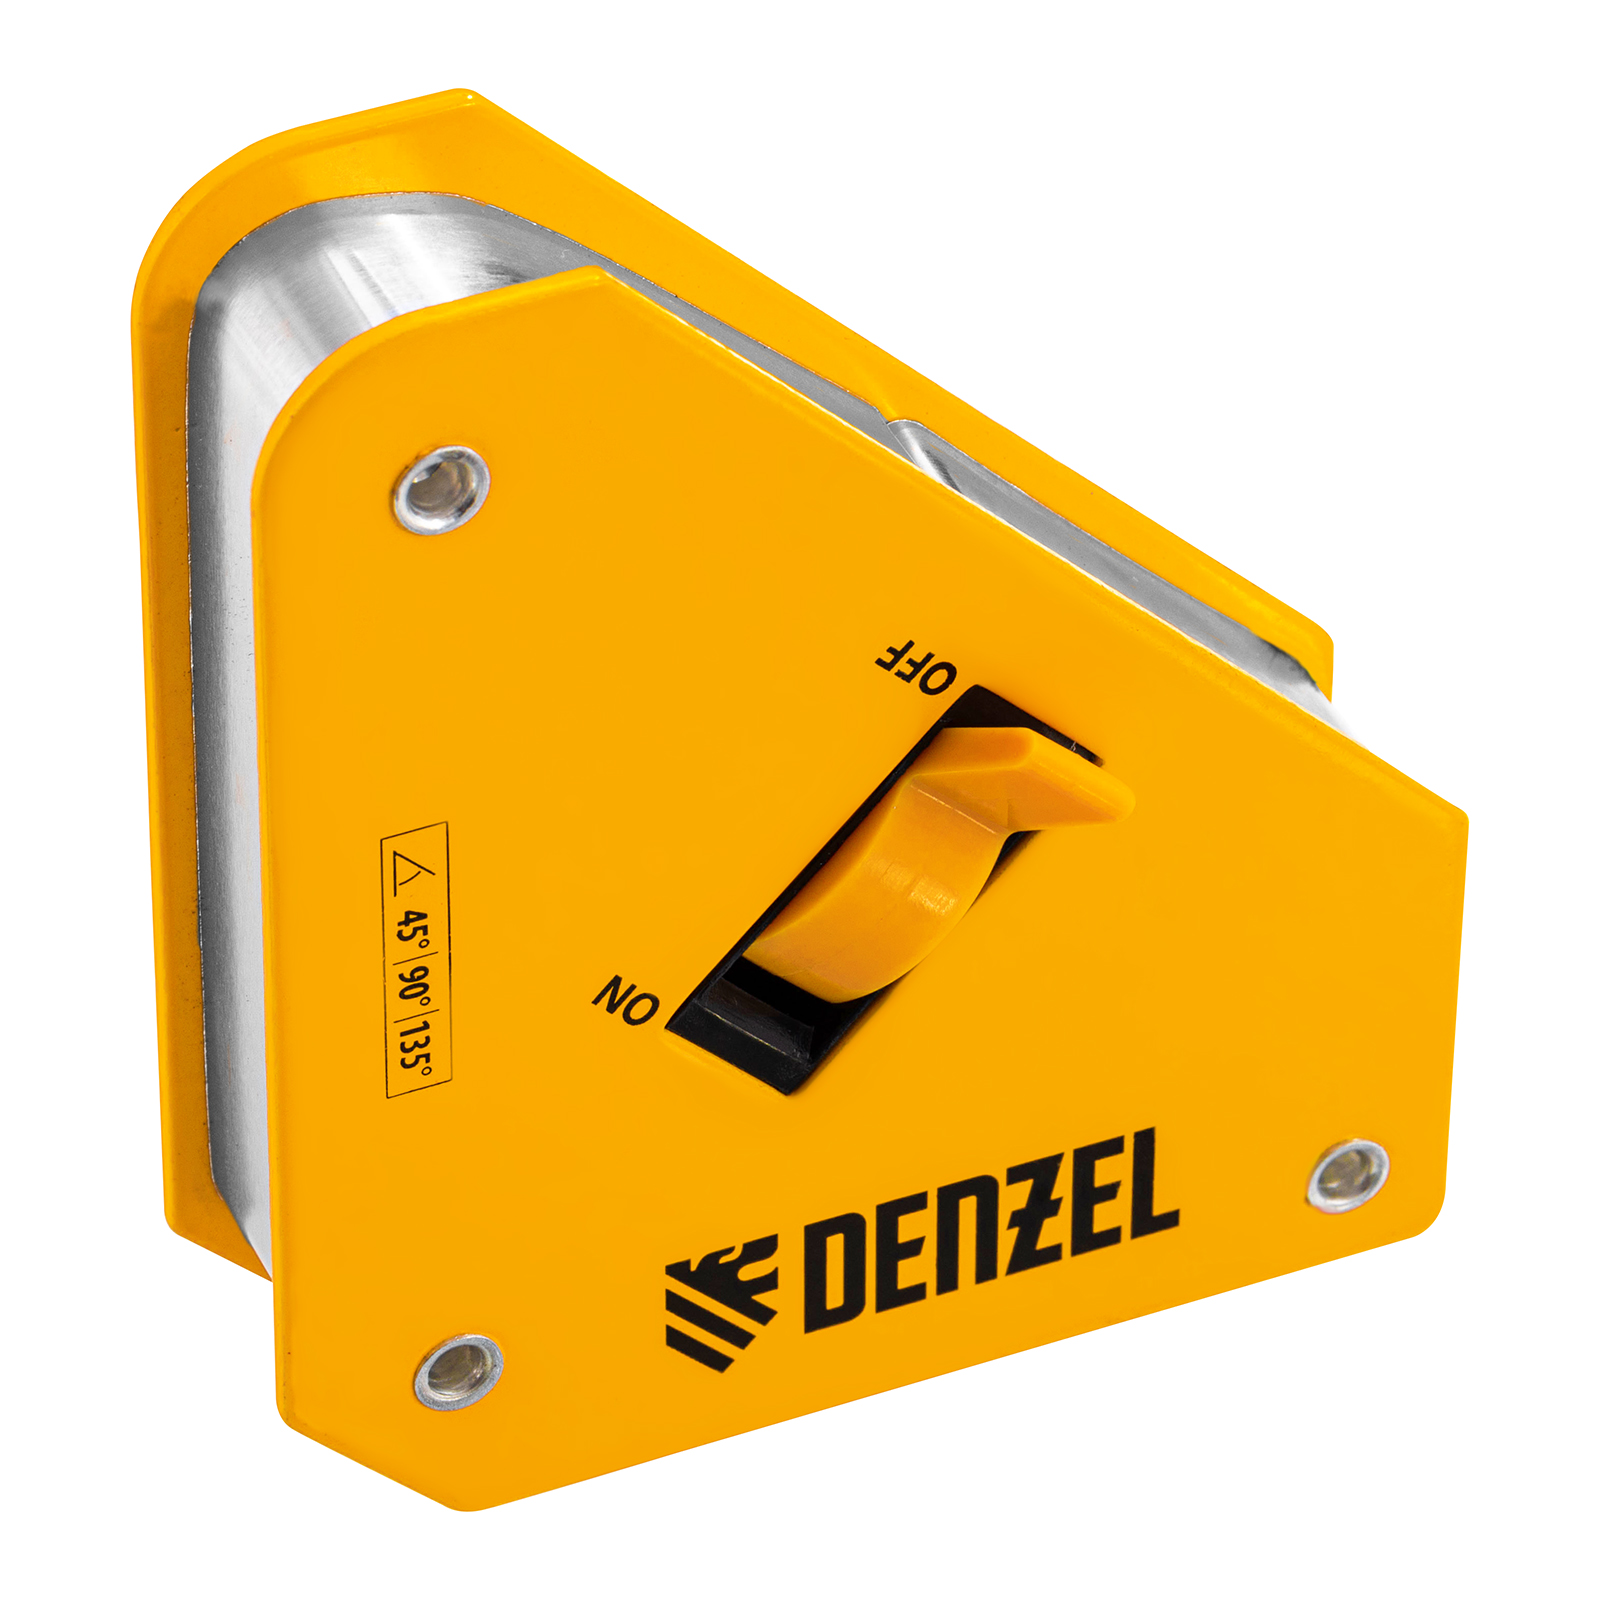 Фиксатор магнитный отключаемый для сварочных работ DENZEL усилие 30 LB, 45х90 град. 97561 магнитный фиксатор для сварочных работ rockforce